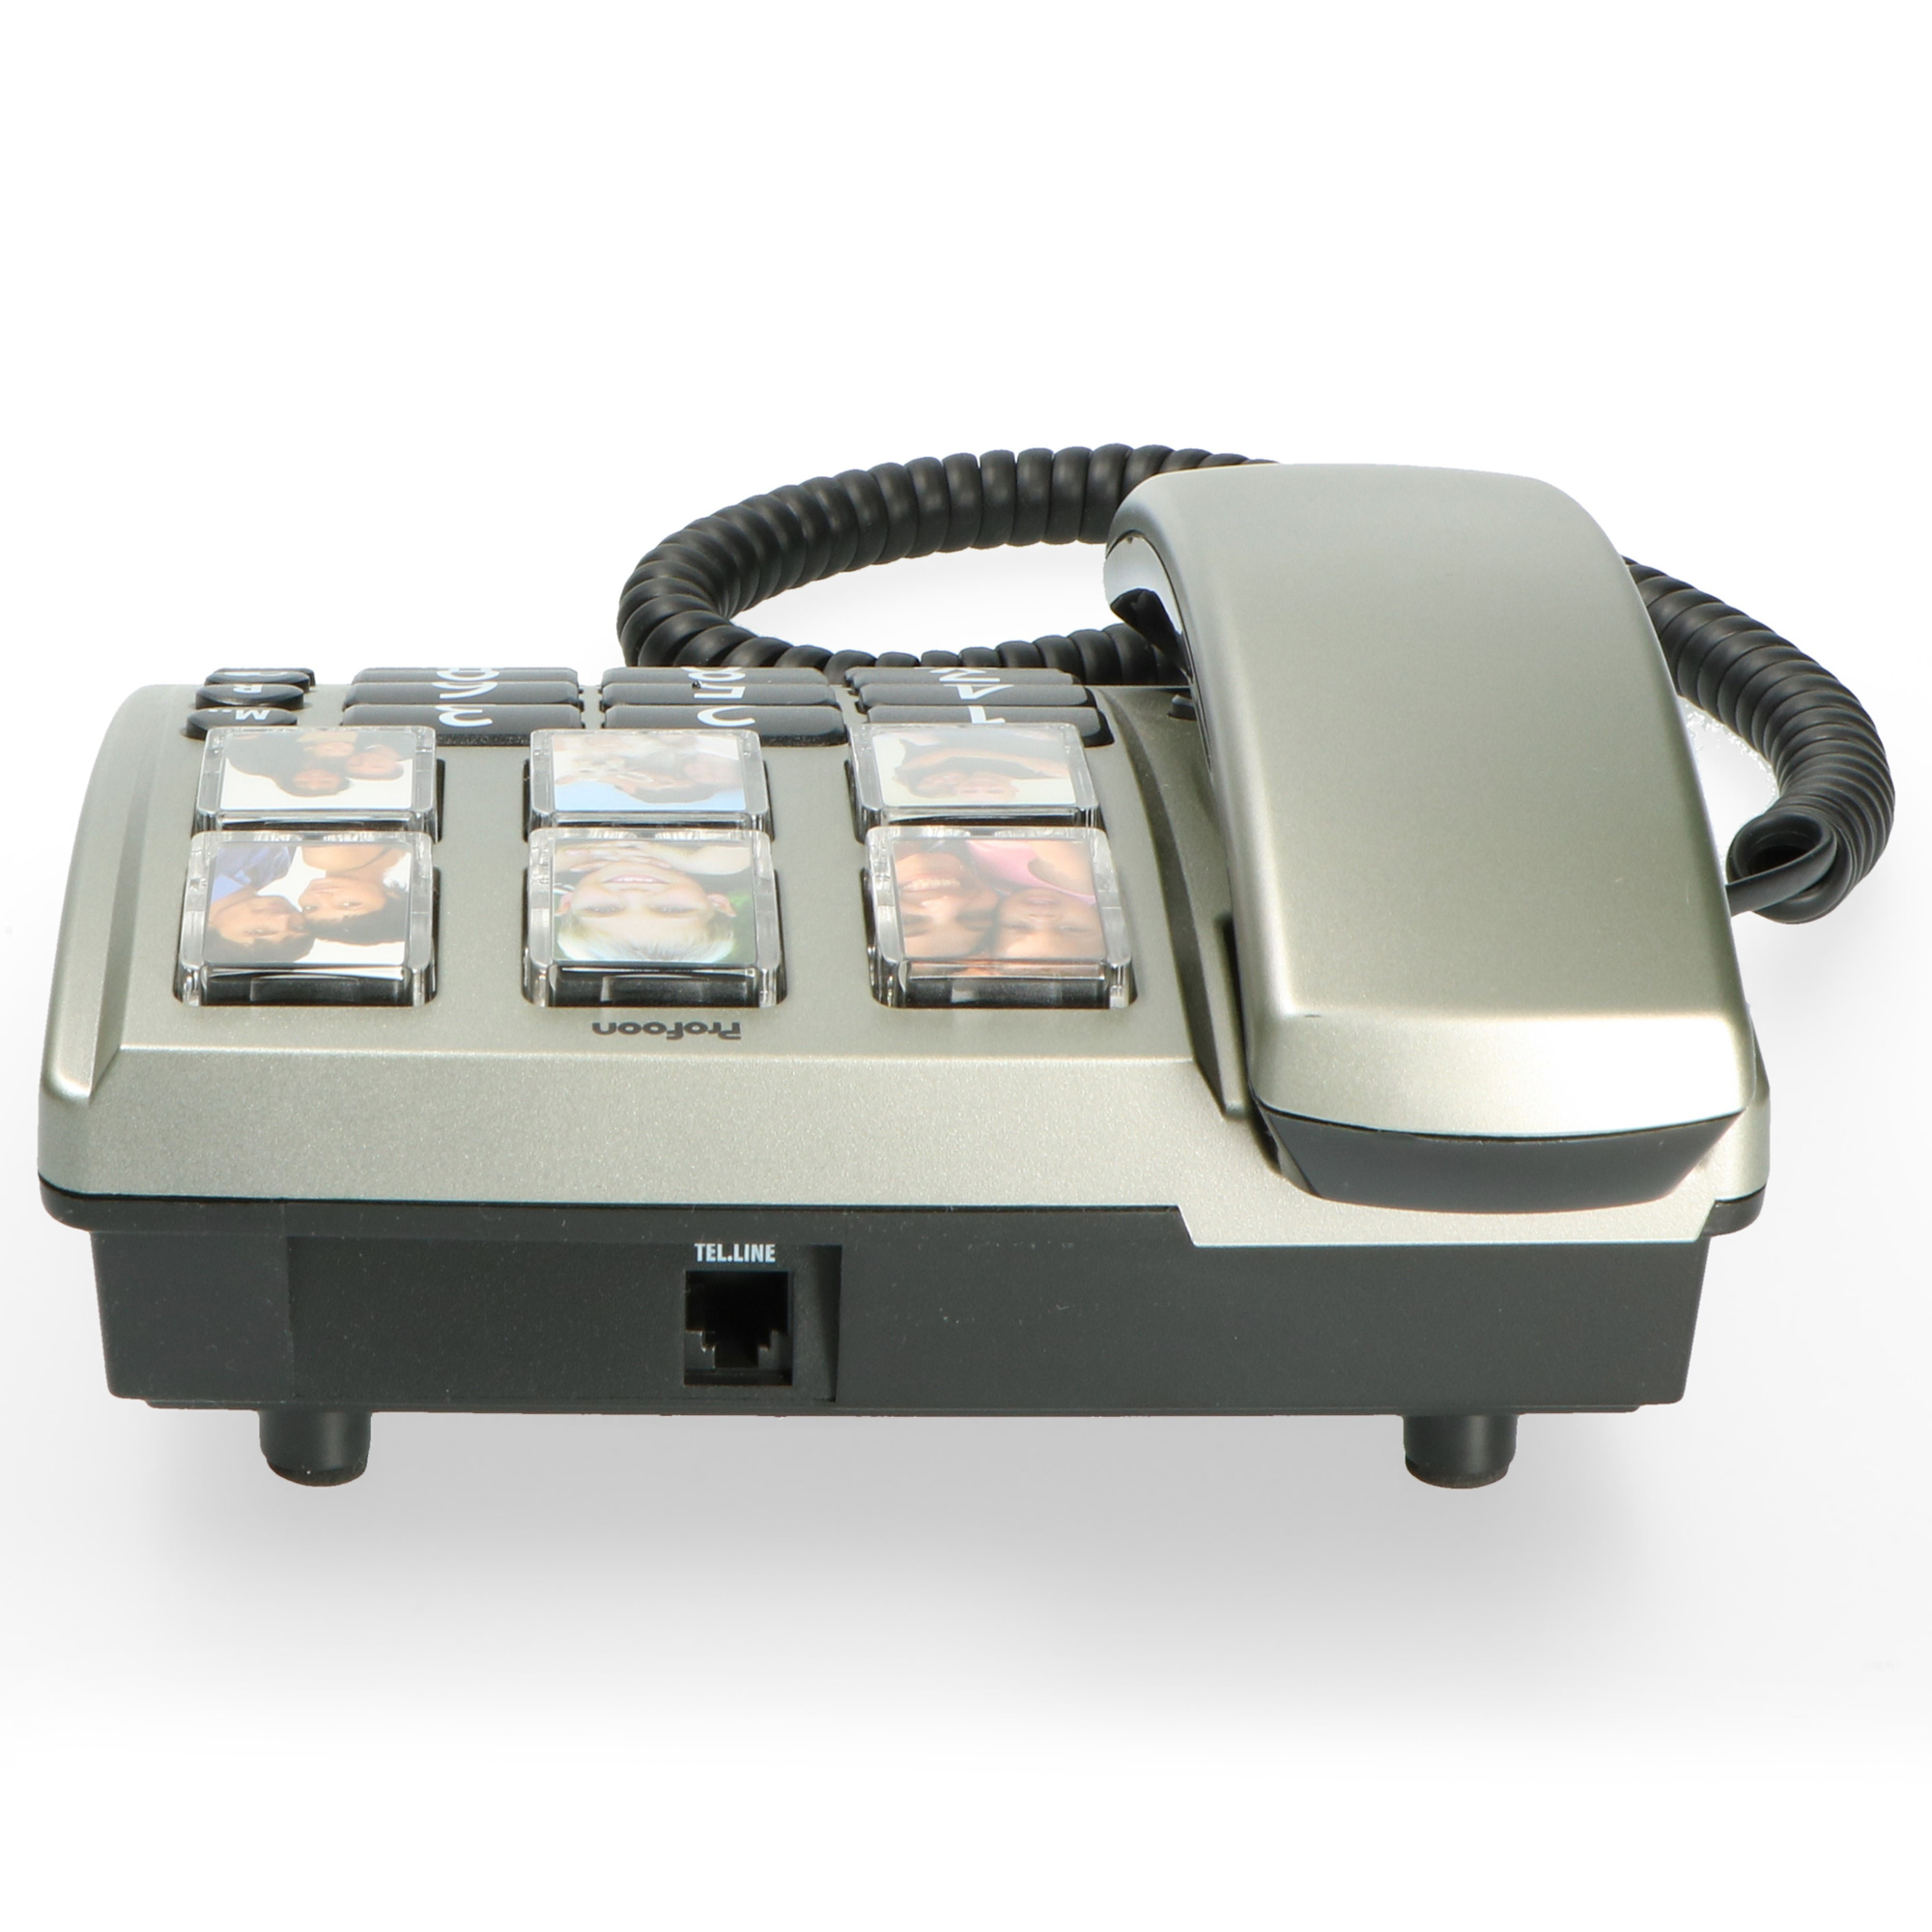 PROFOON TX-560 - Bürotelefon - schnurgebunden Zahlentasten großen Fototasten und Tischtelefon mit großen